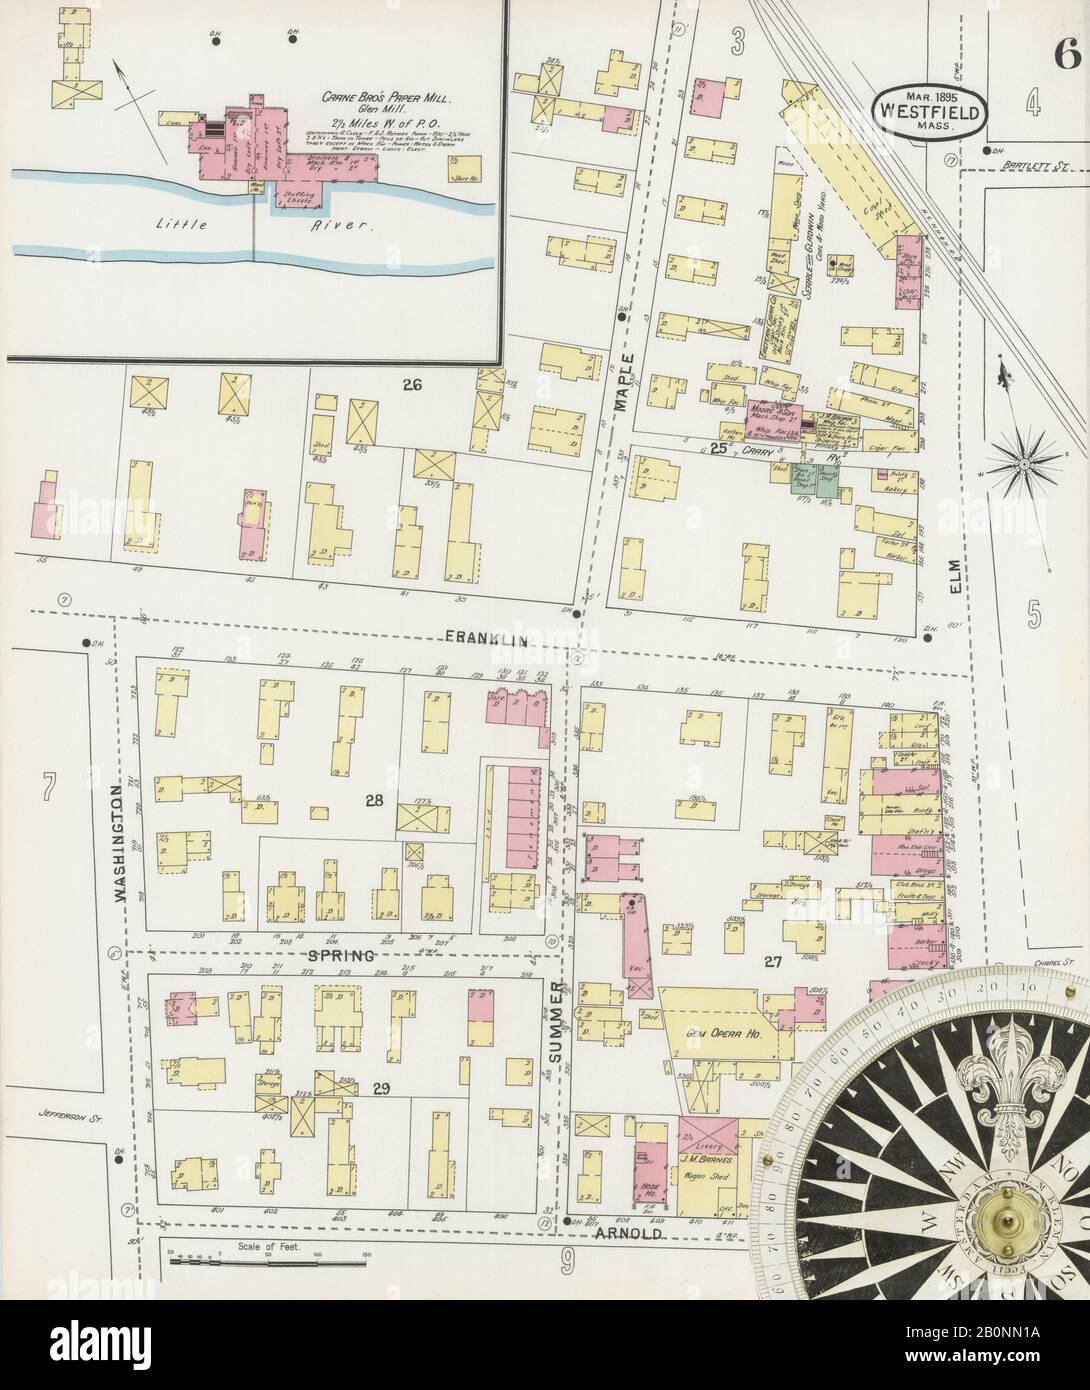 Bild 6 von Sanborn Fire Insurance Map aus Westfield, Hampden County, Massachusetts. Feb. 12 Blatt(e), Amerika, Straßenkarte mit einem Kompass Aus Dem 19. Jahrhundert Stockfoto